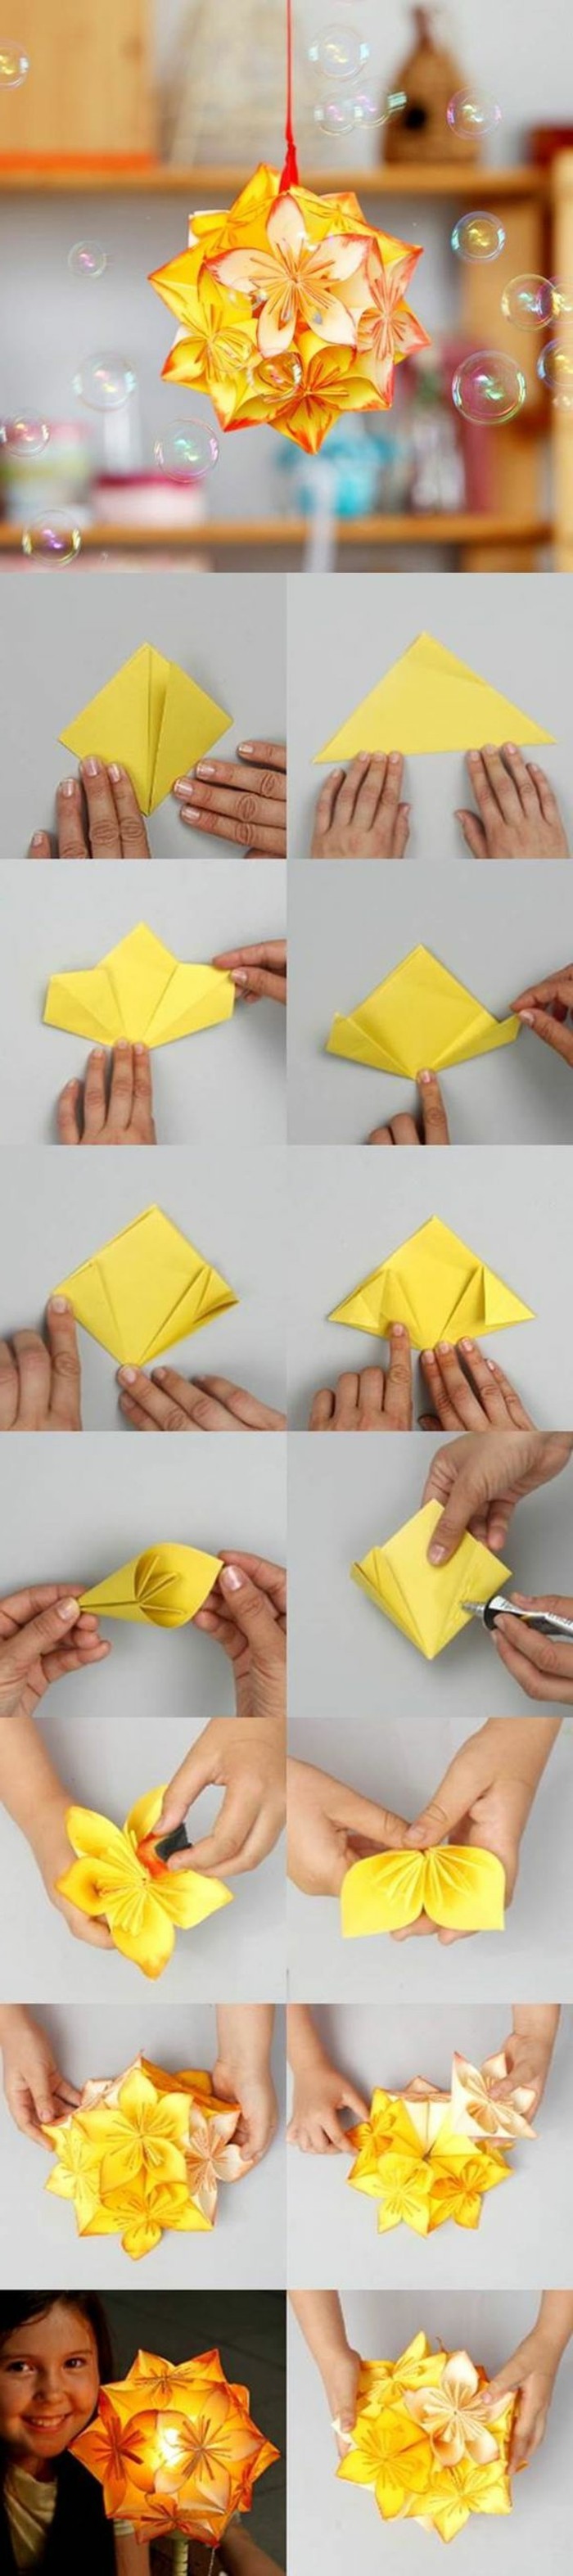 origami-falten-origami-faltanleitung-origami-faltanleitungen-falttechnik-papier